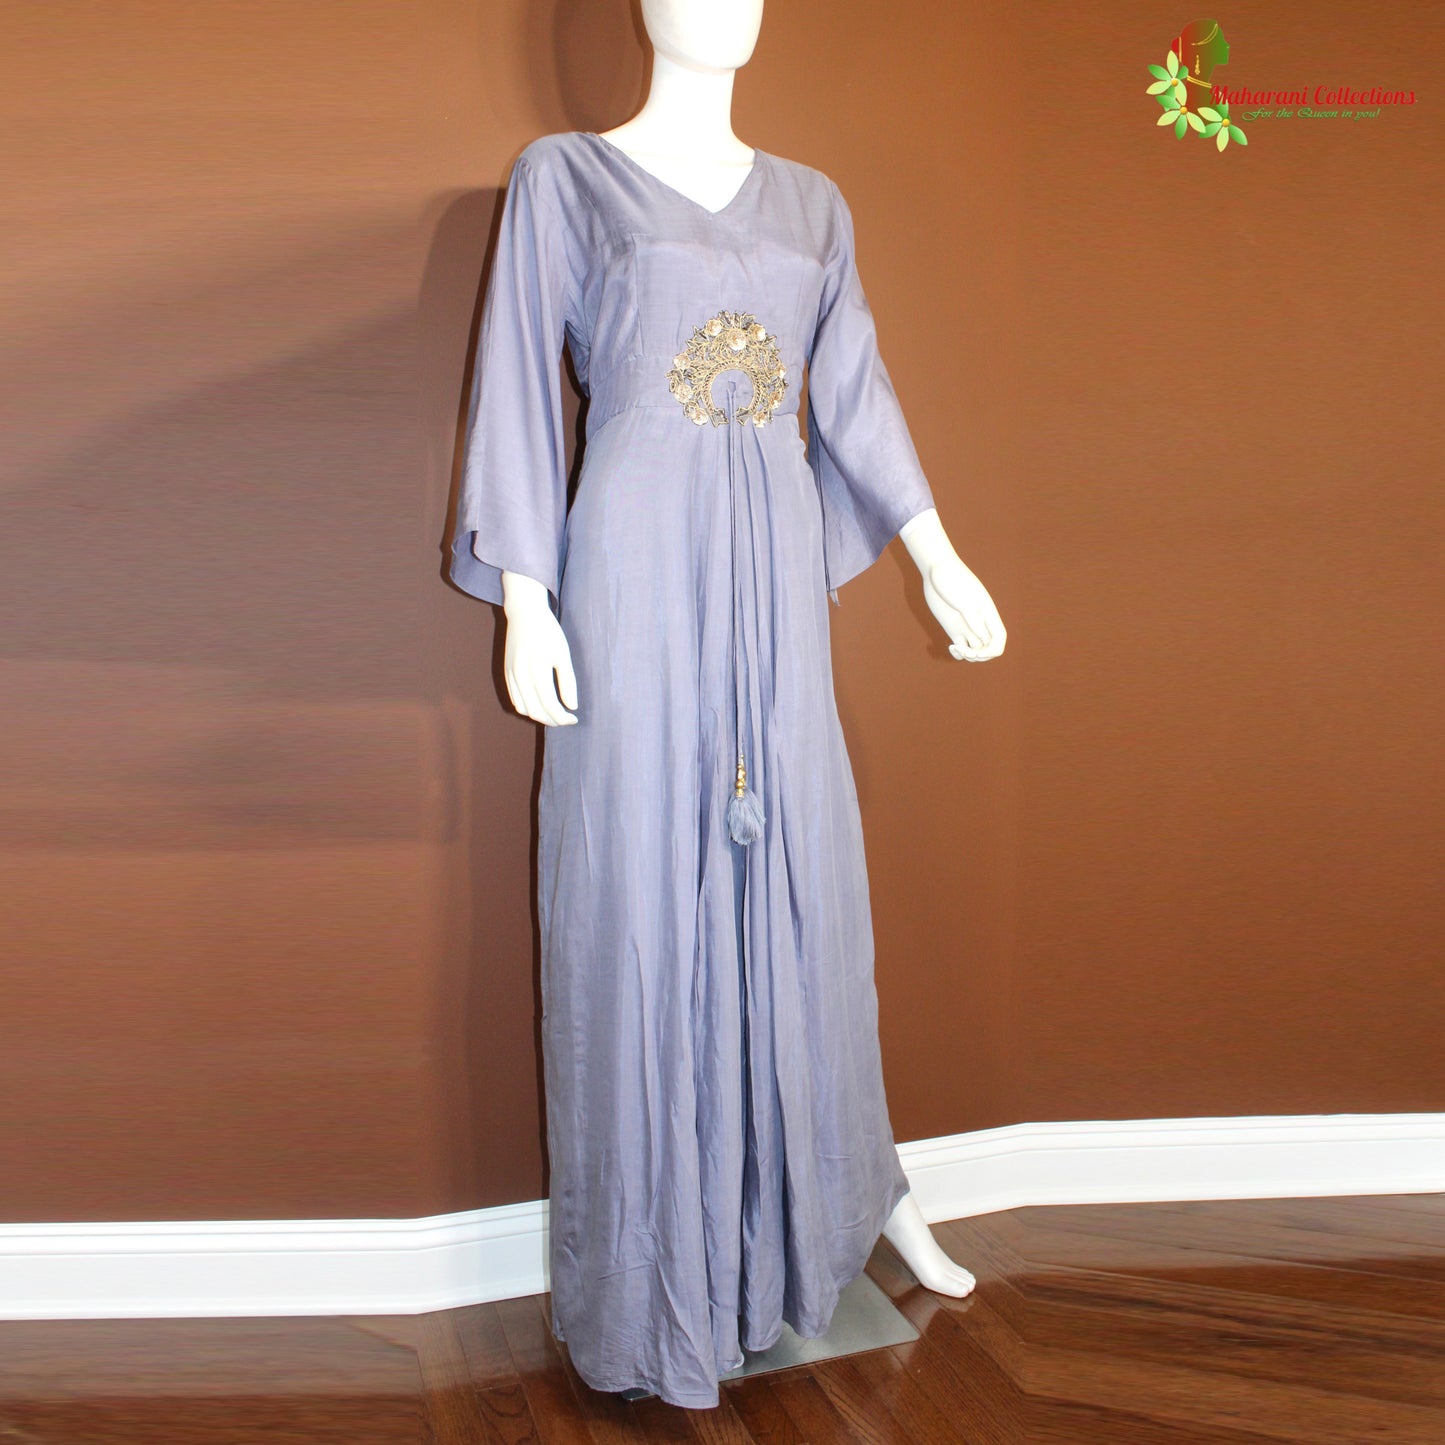 Maharani's Satin Silk Long Dress - Aegean Blue (M)